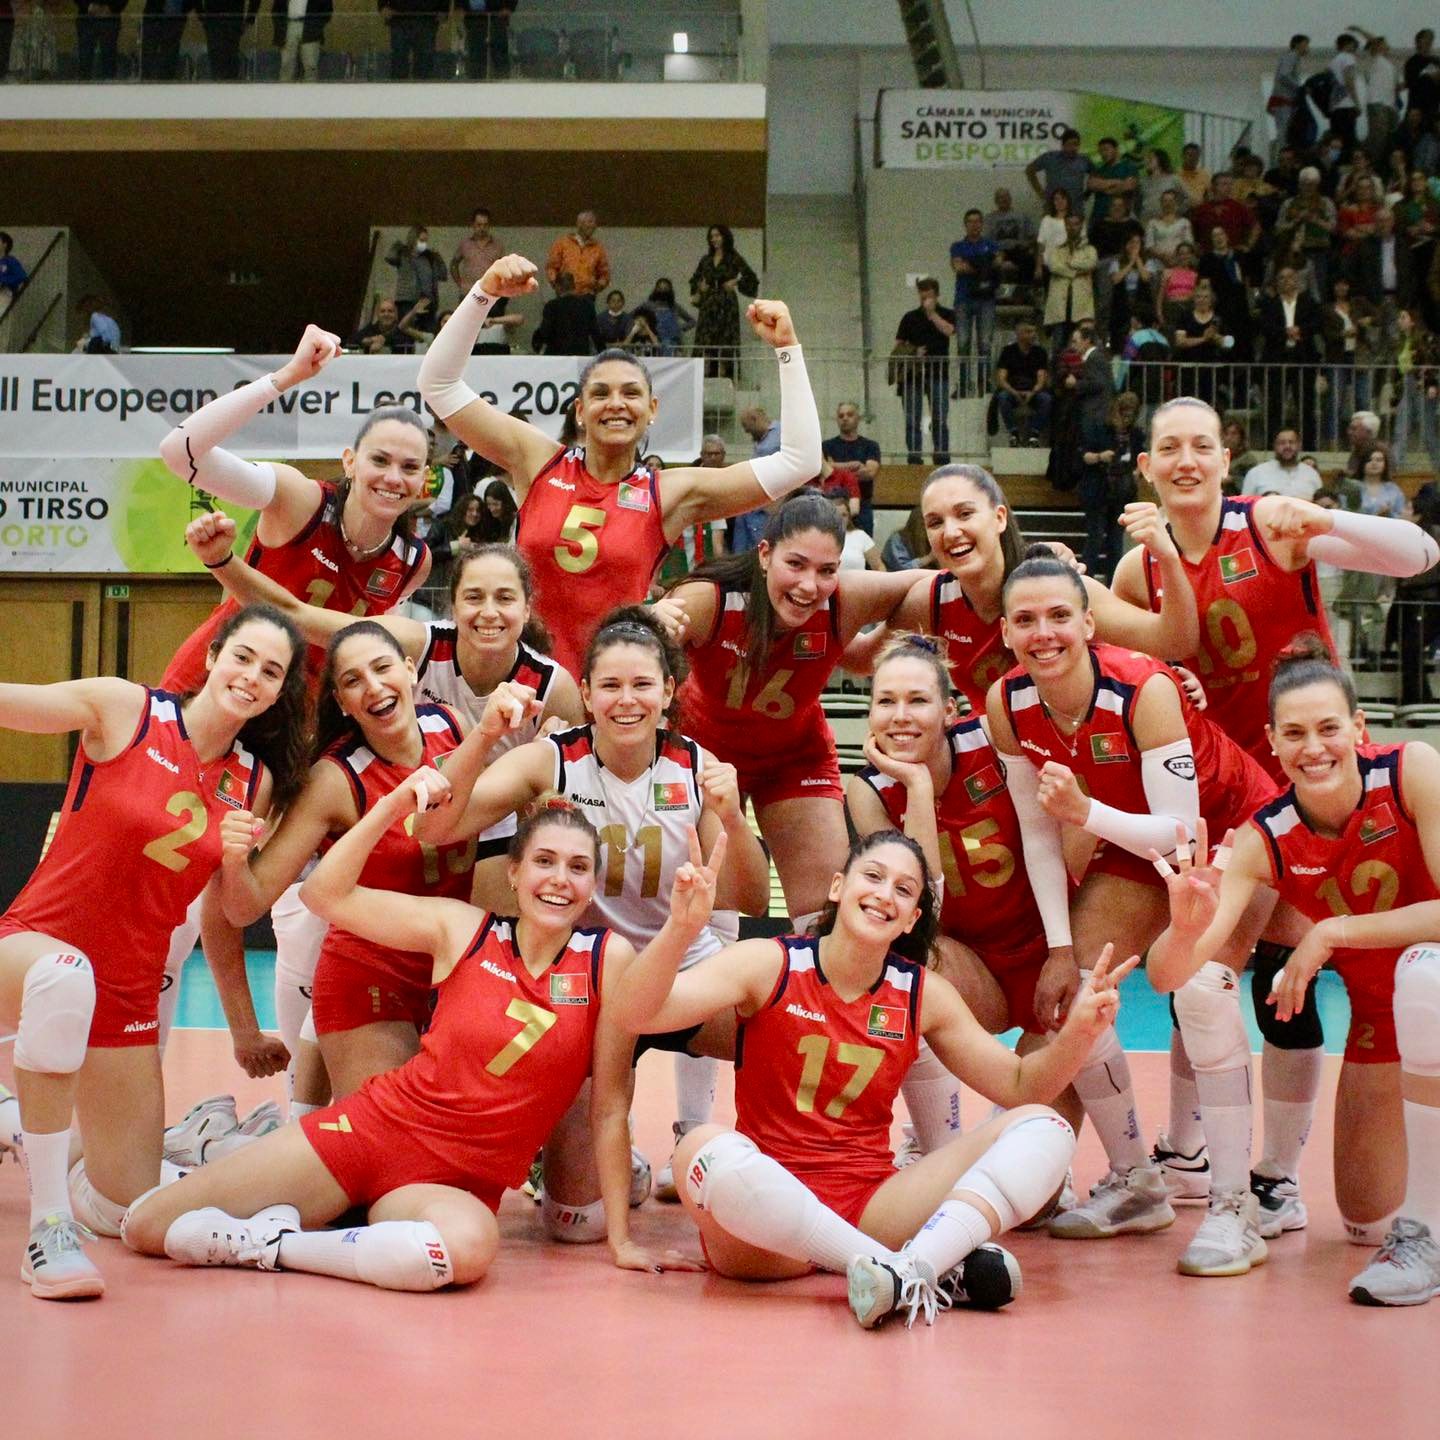 O Voleibol Feminino Em Portugal Análises Desenvolvimento E Desafios Sportmagazine